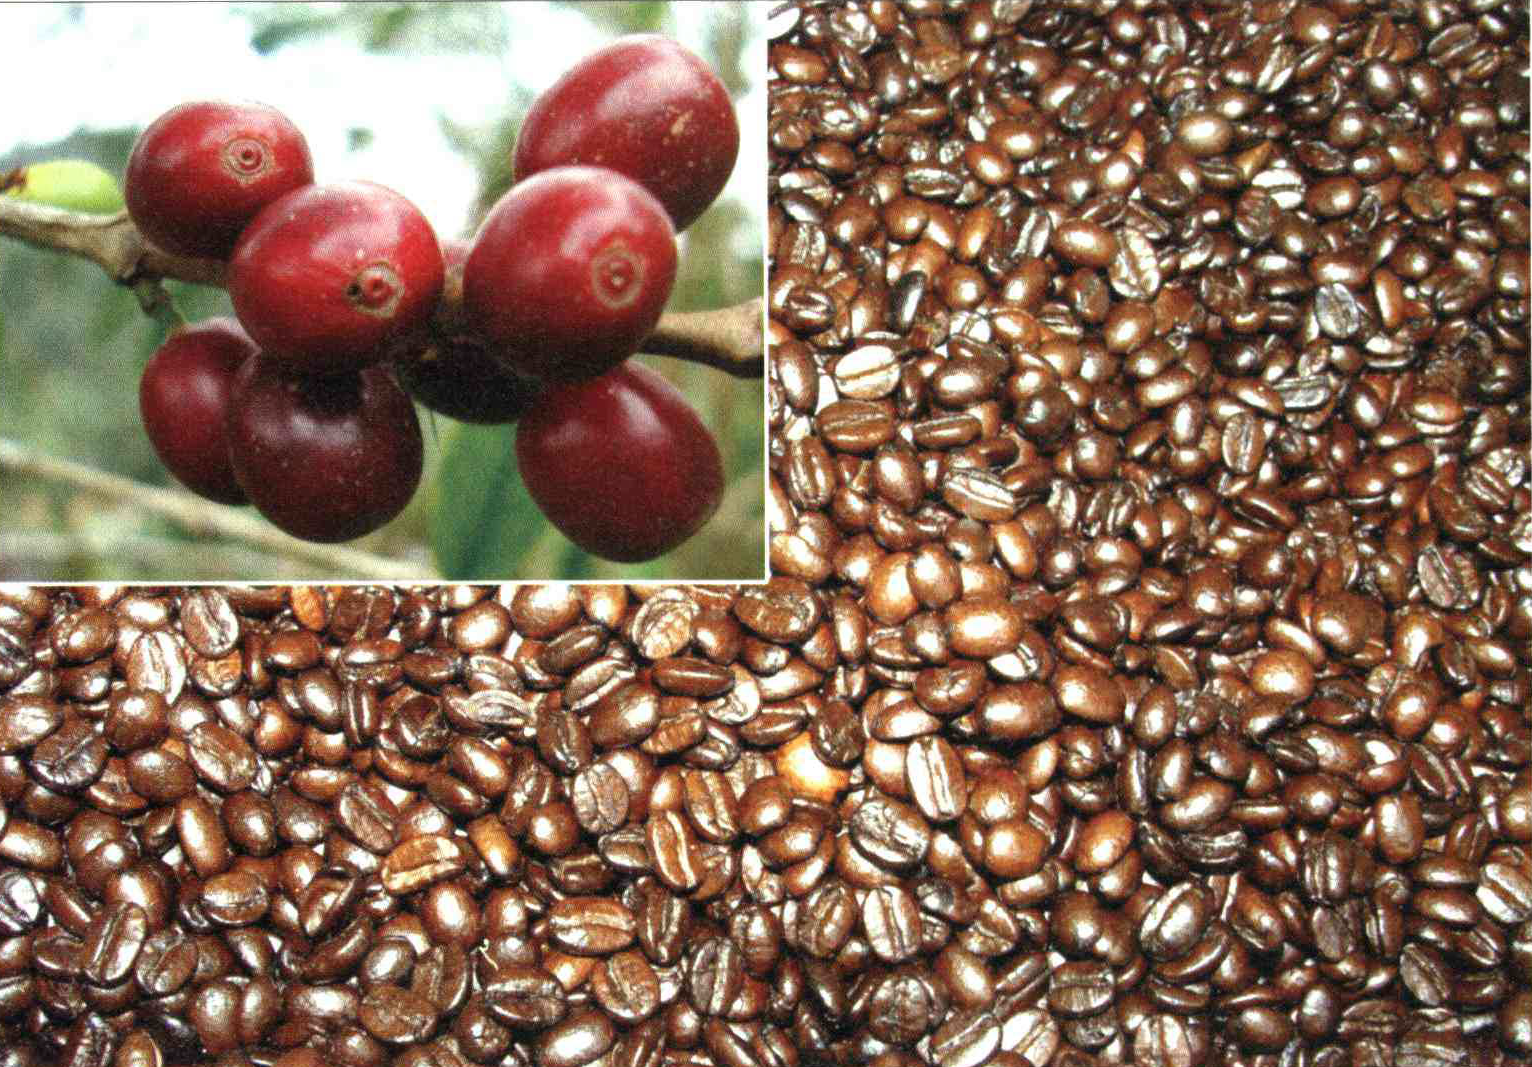 9fcb1188492990c5a0c0d63a0f9446780587fa0c 14 - کود مناسب گیاه قهوه چیست و چه خاصیتی دارد؟